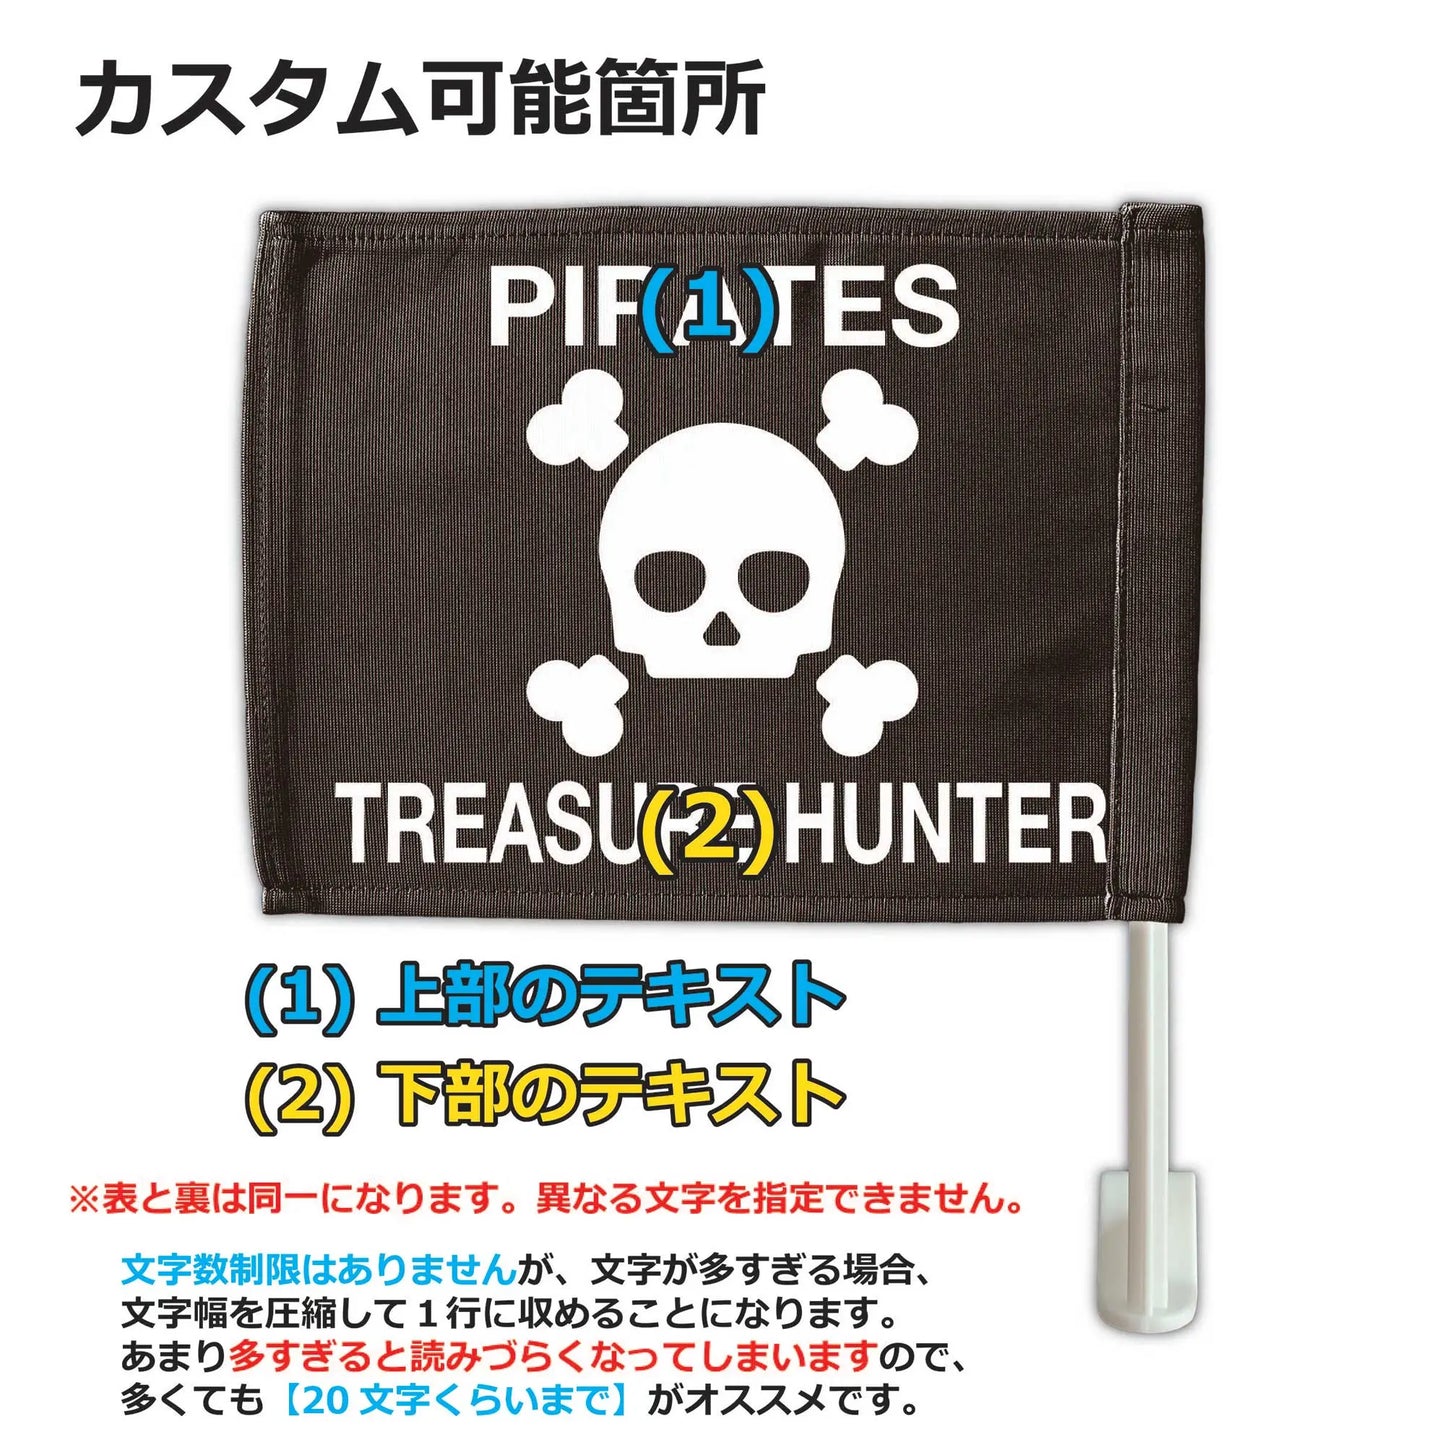 【カーフラッグ】PIRATES/海賊/自動車用オリジナルフラッグ・旗 PL8HERO